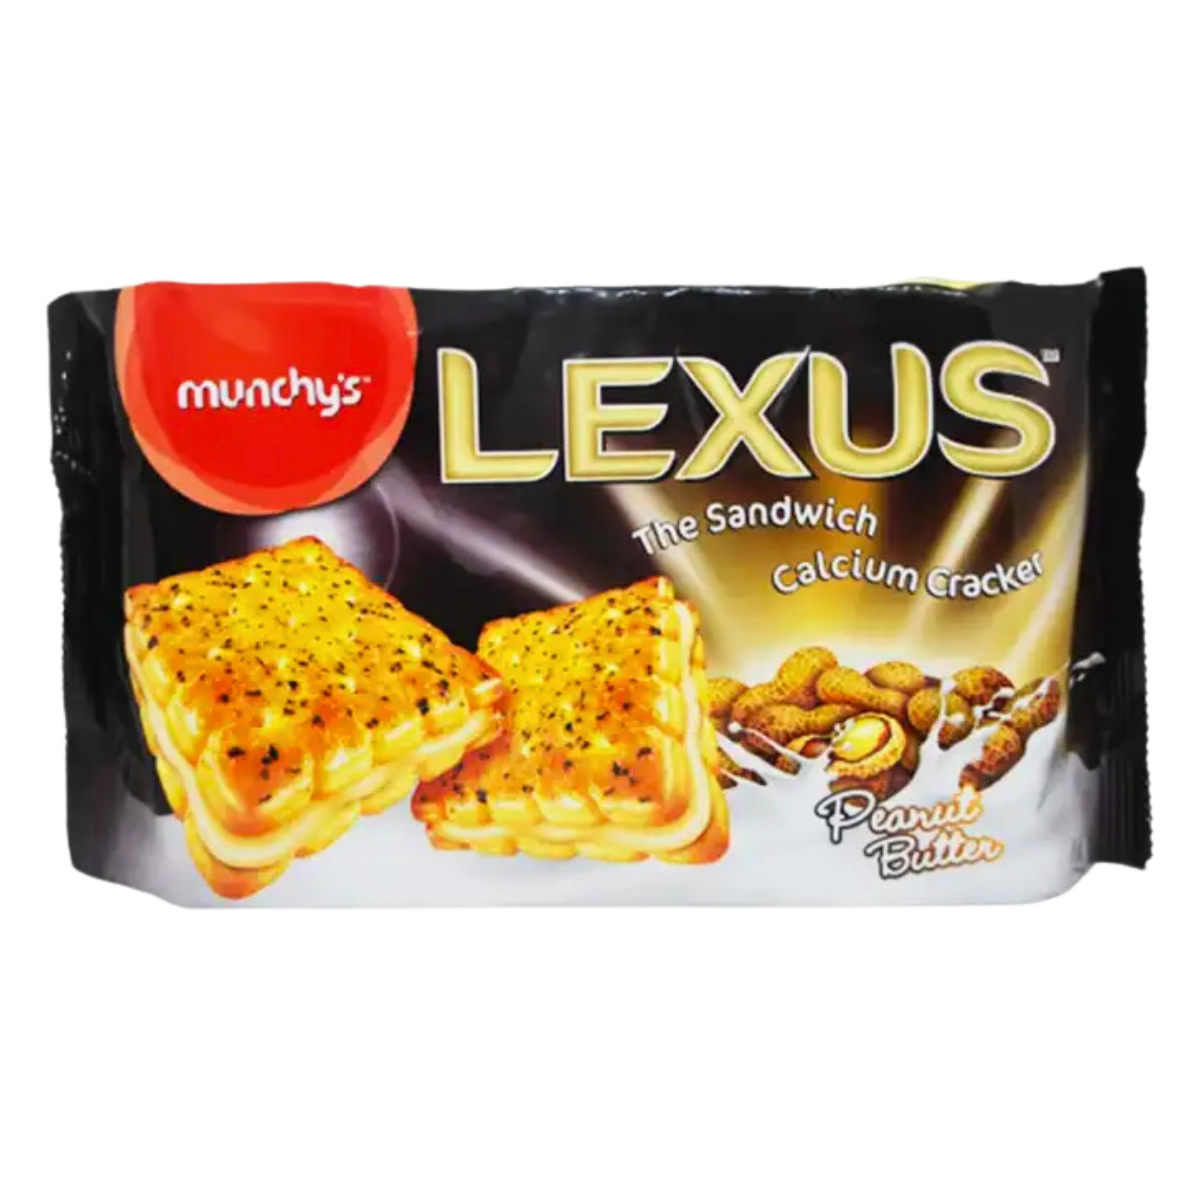 Munchys Lexus the Sandwich Calcium Cracker Peanut Butter 225g